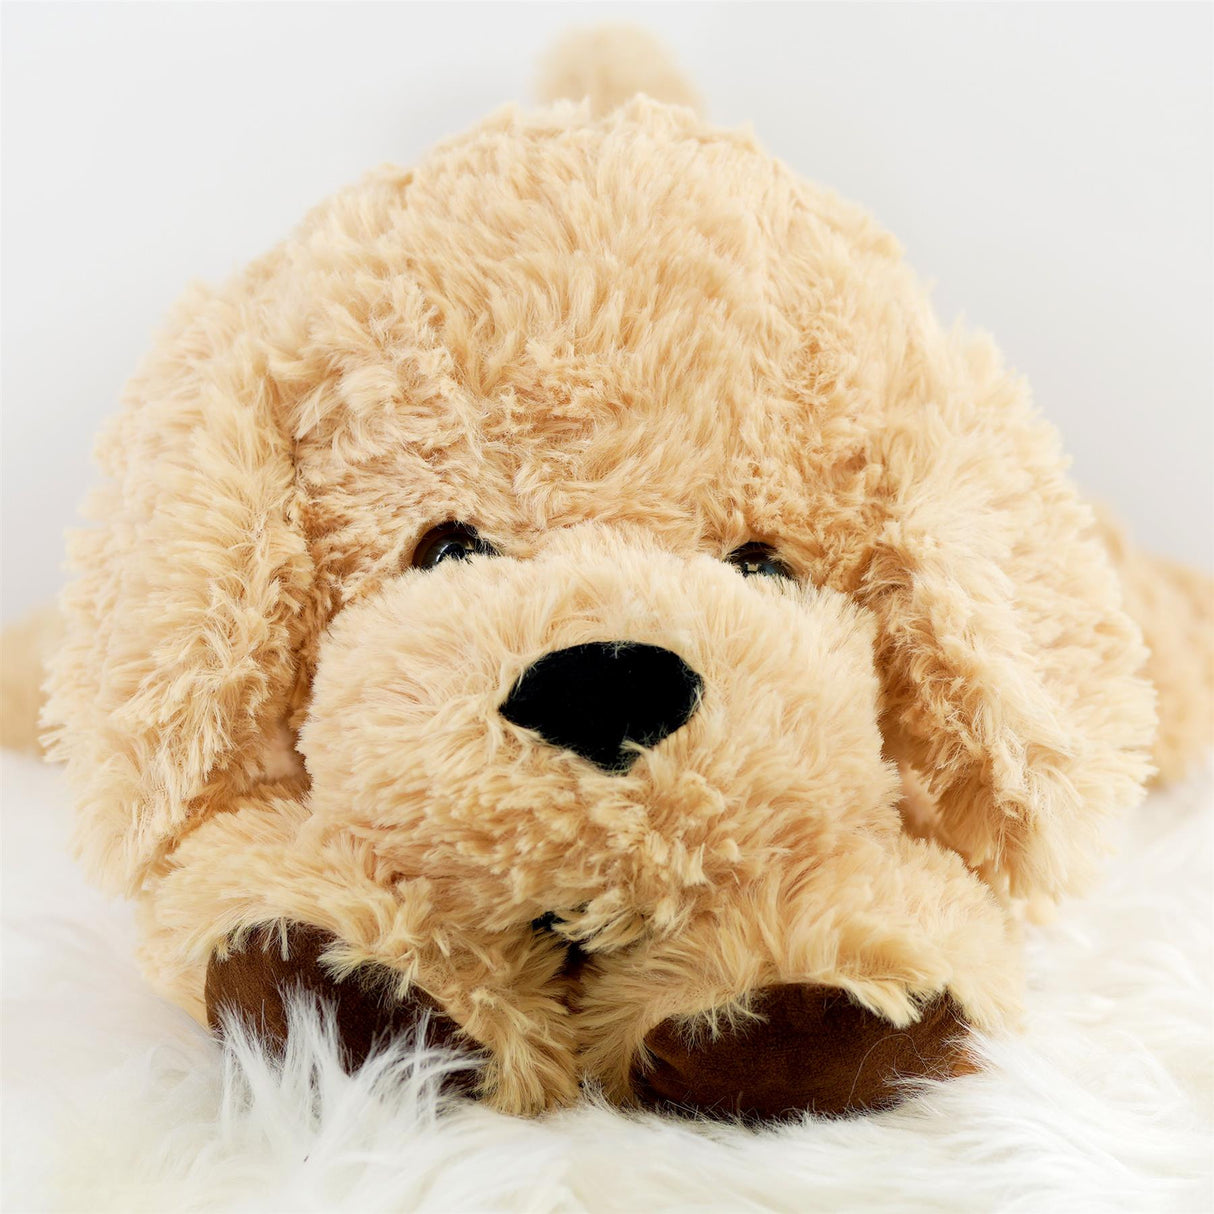 Giant Plush Lying Dog Soft Toy, 28 Inch by The Magic Toy Shop - UKBuyZone